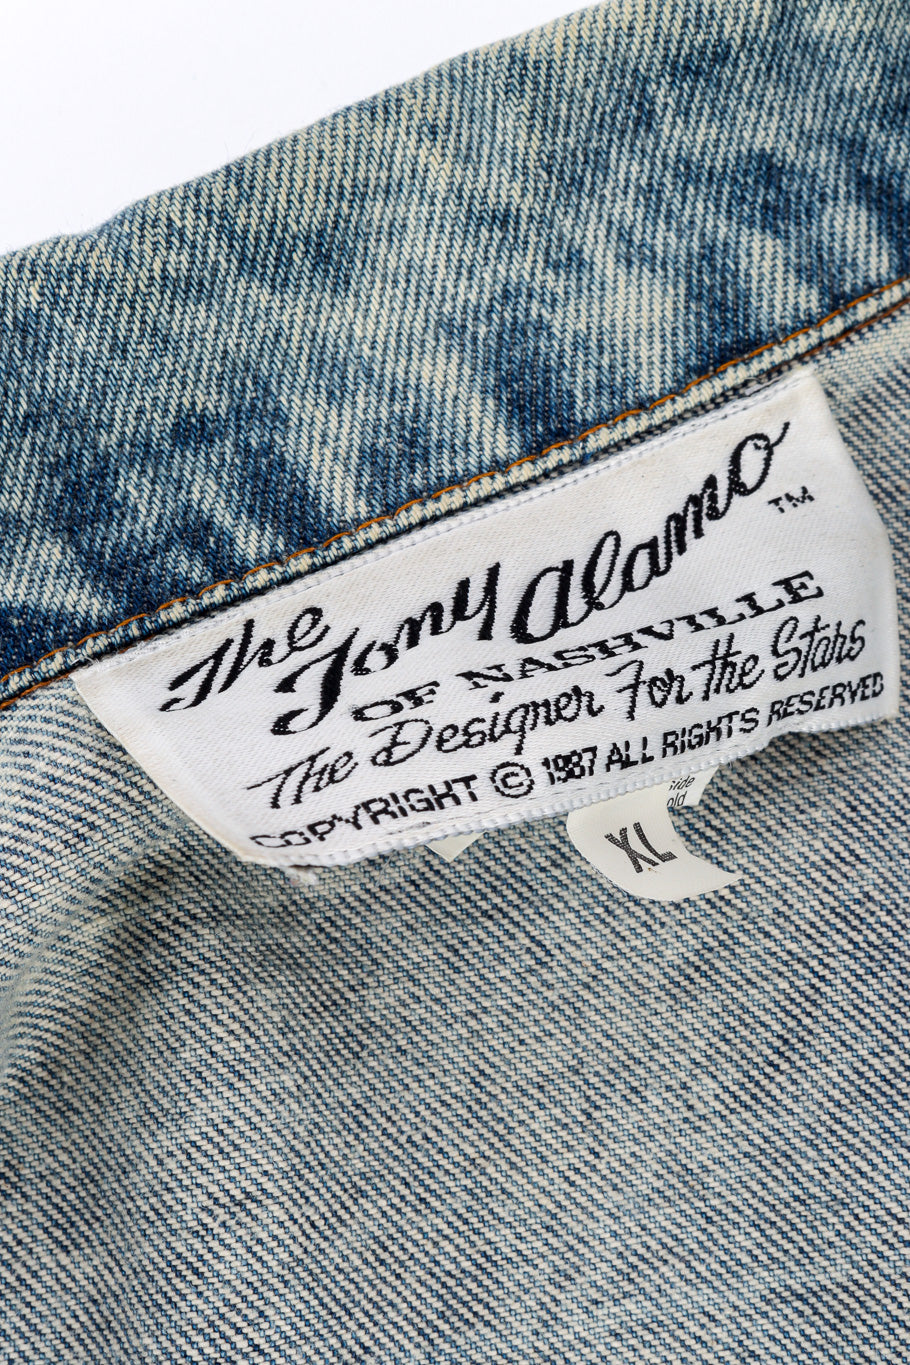 Vintage Tony Alamo Florida Denim Jacket signature label closeup @Recessla